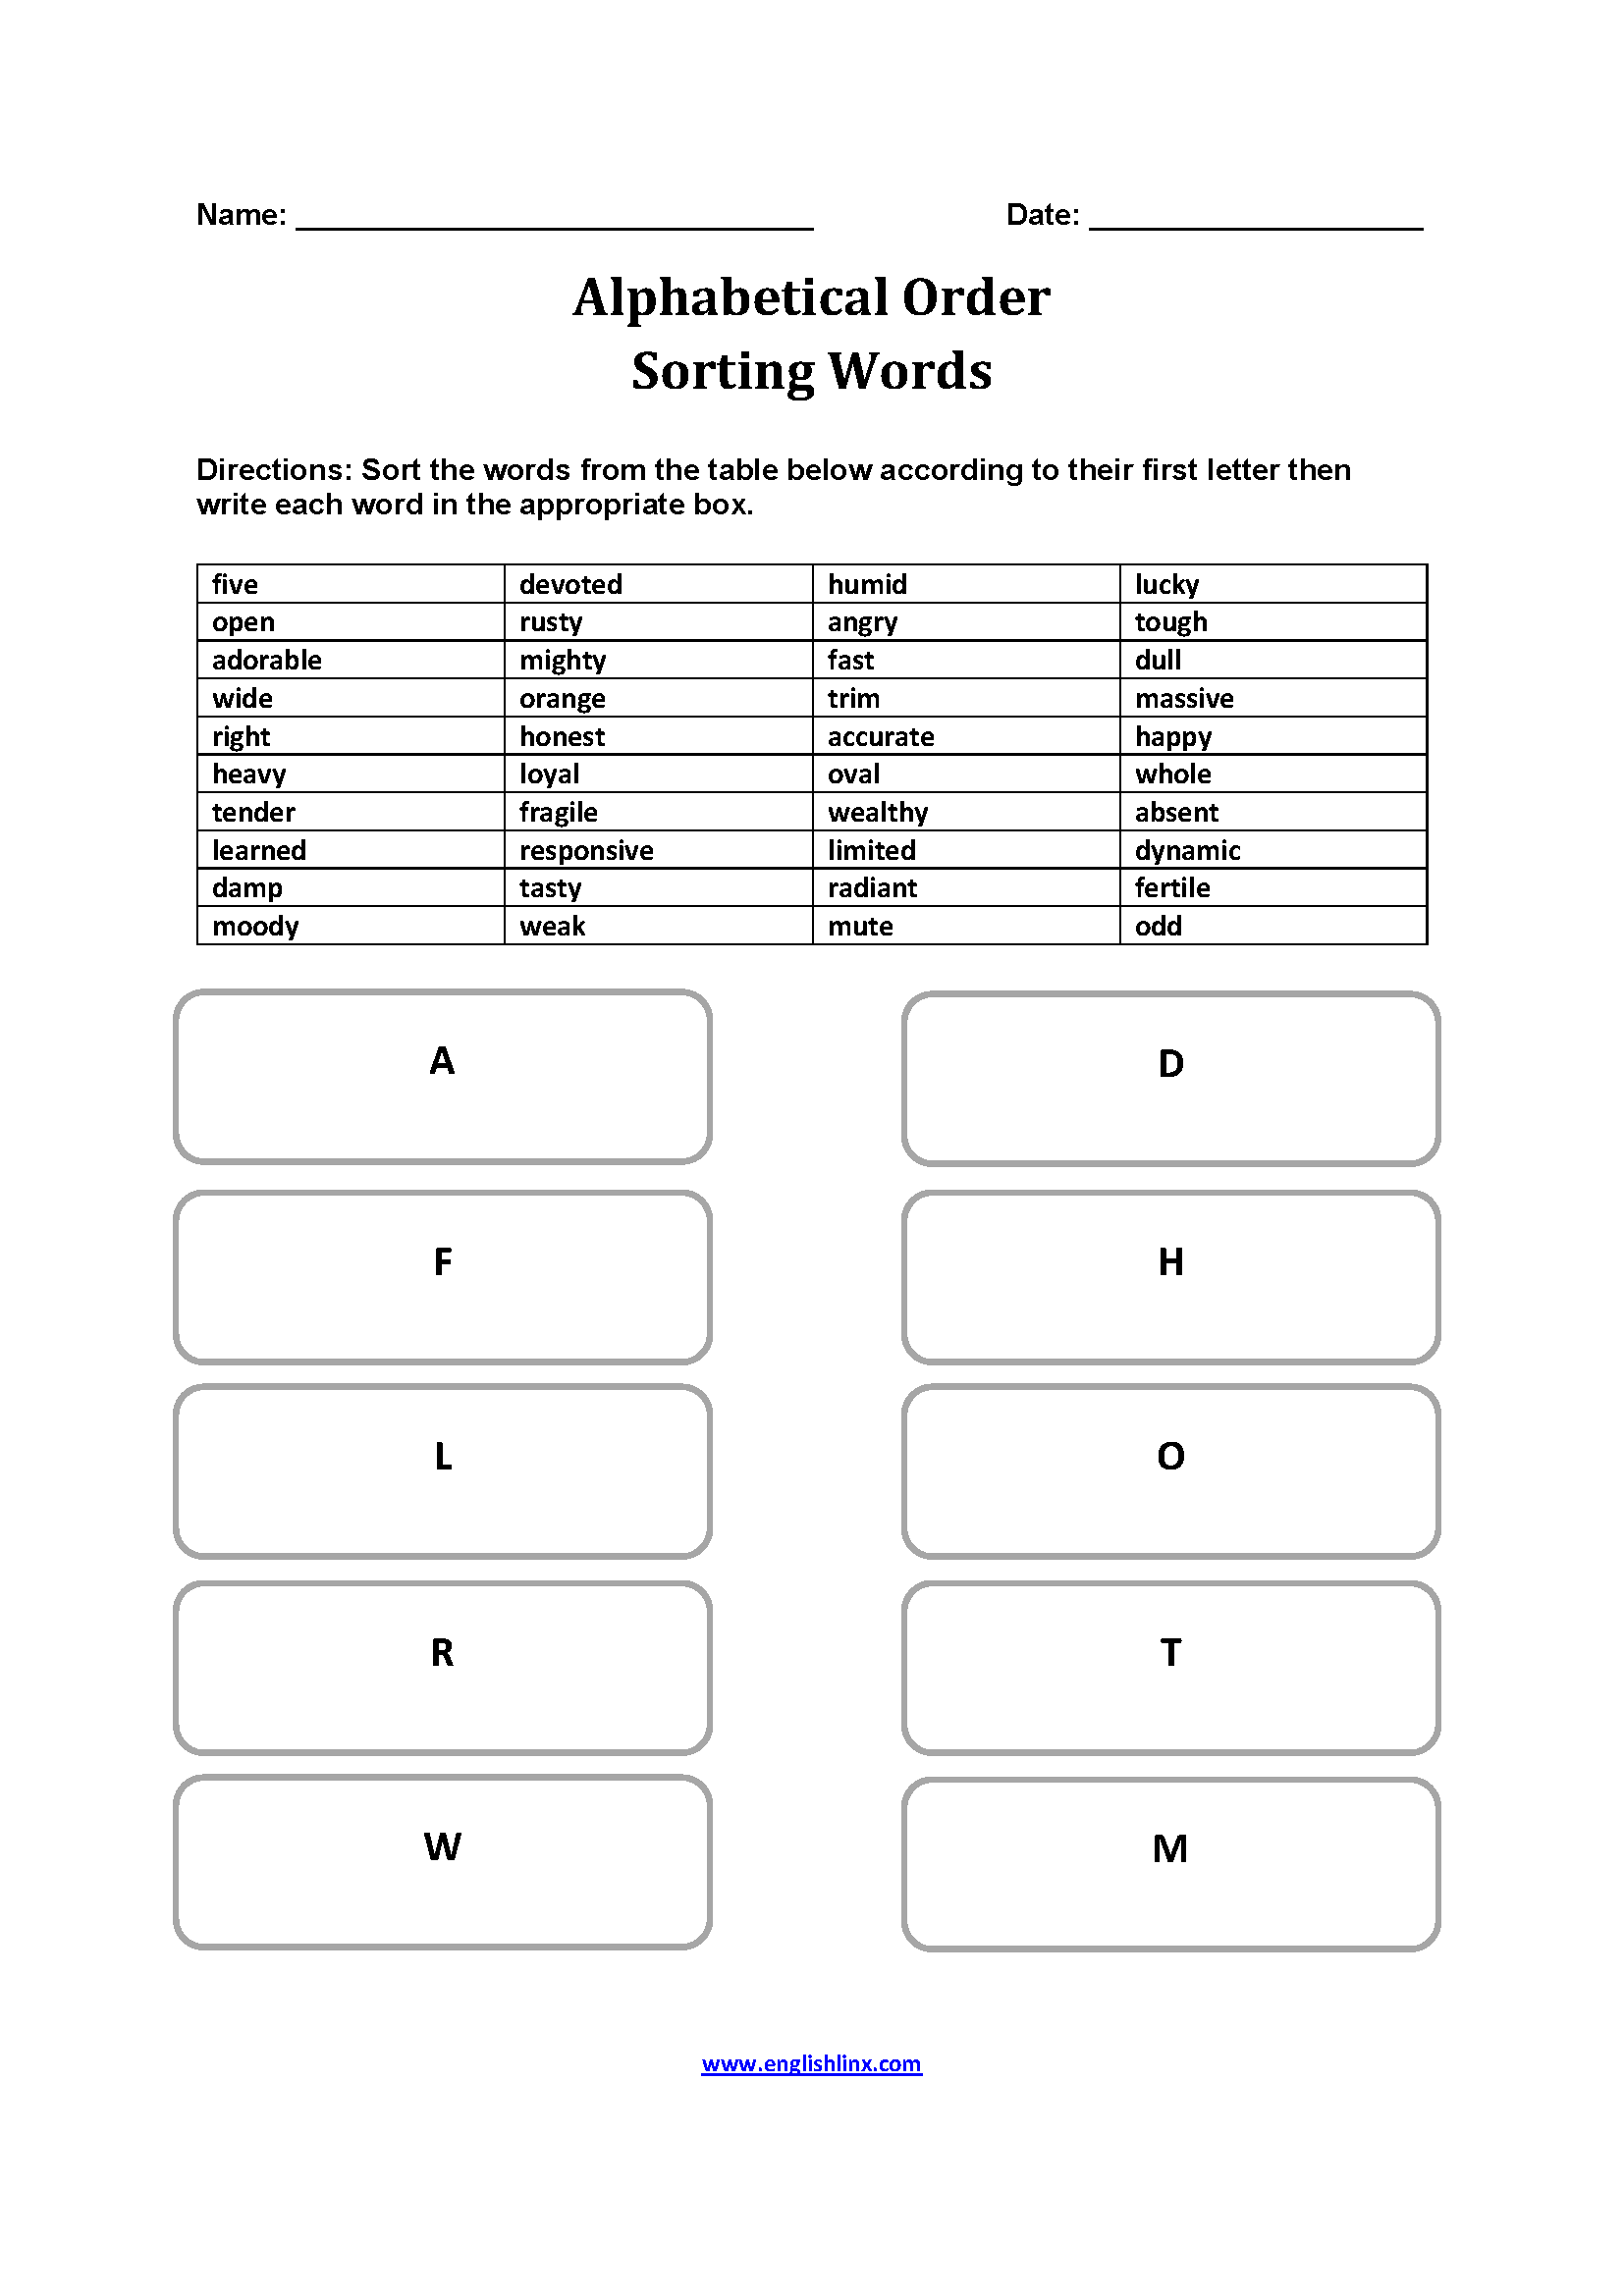 Sorting Words Alphabetical Order Worksheets